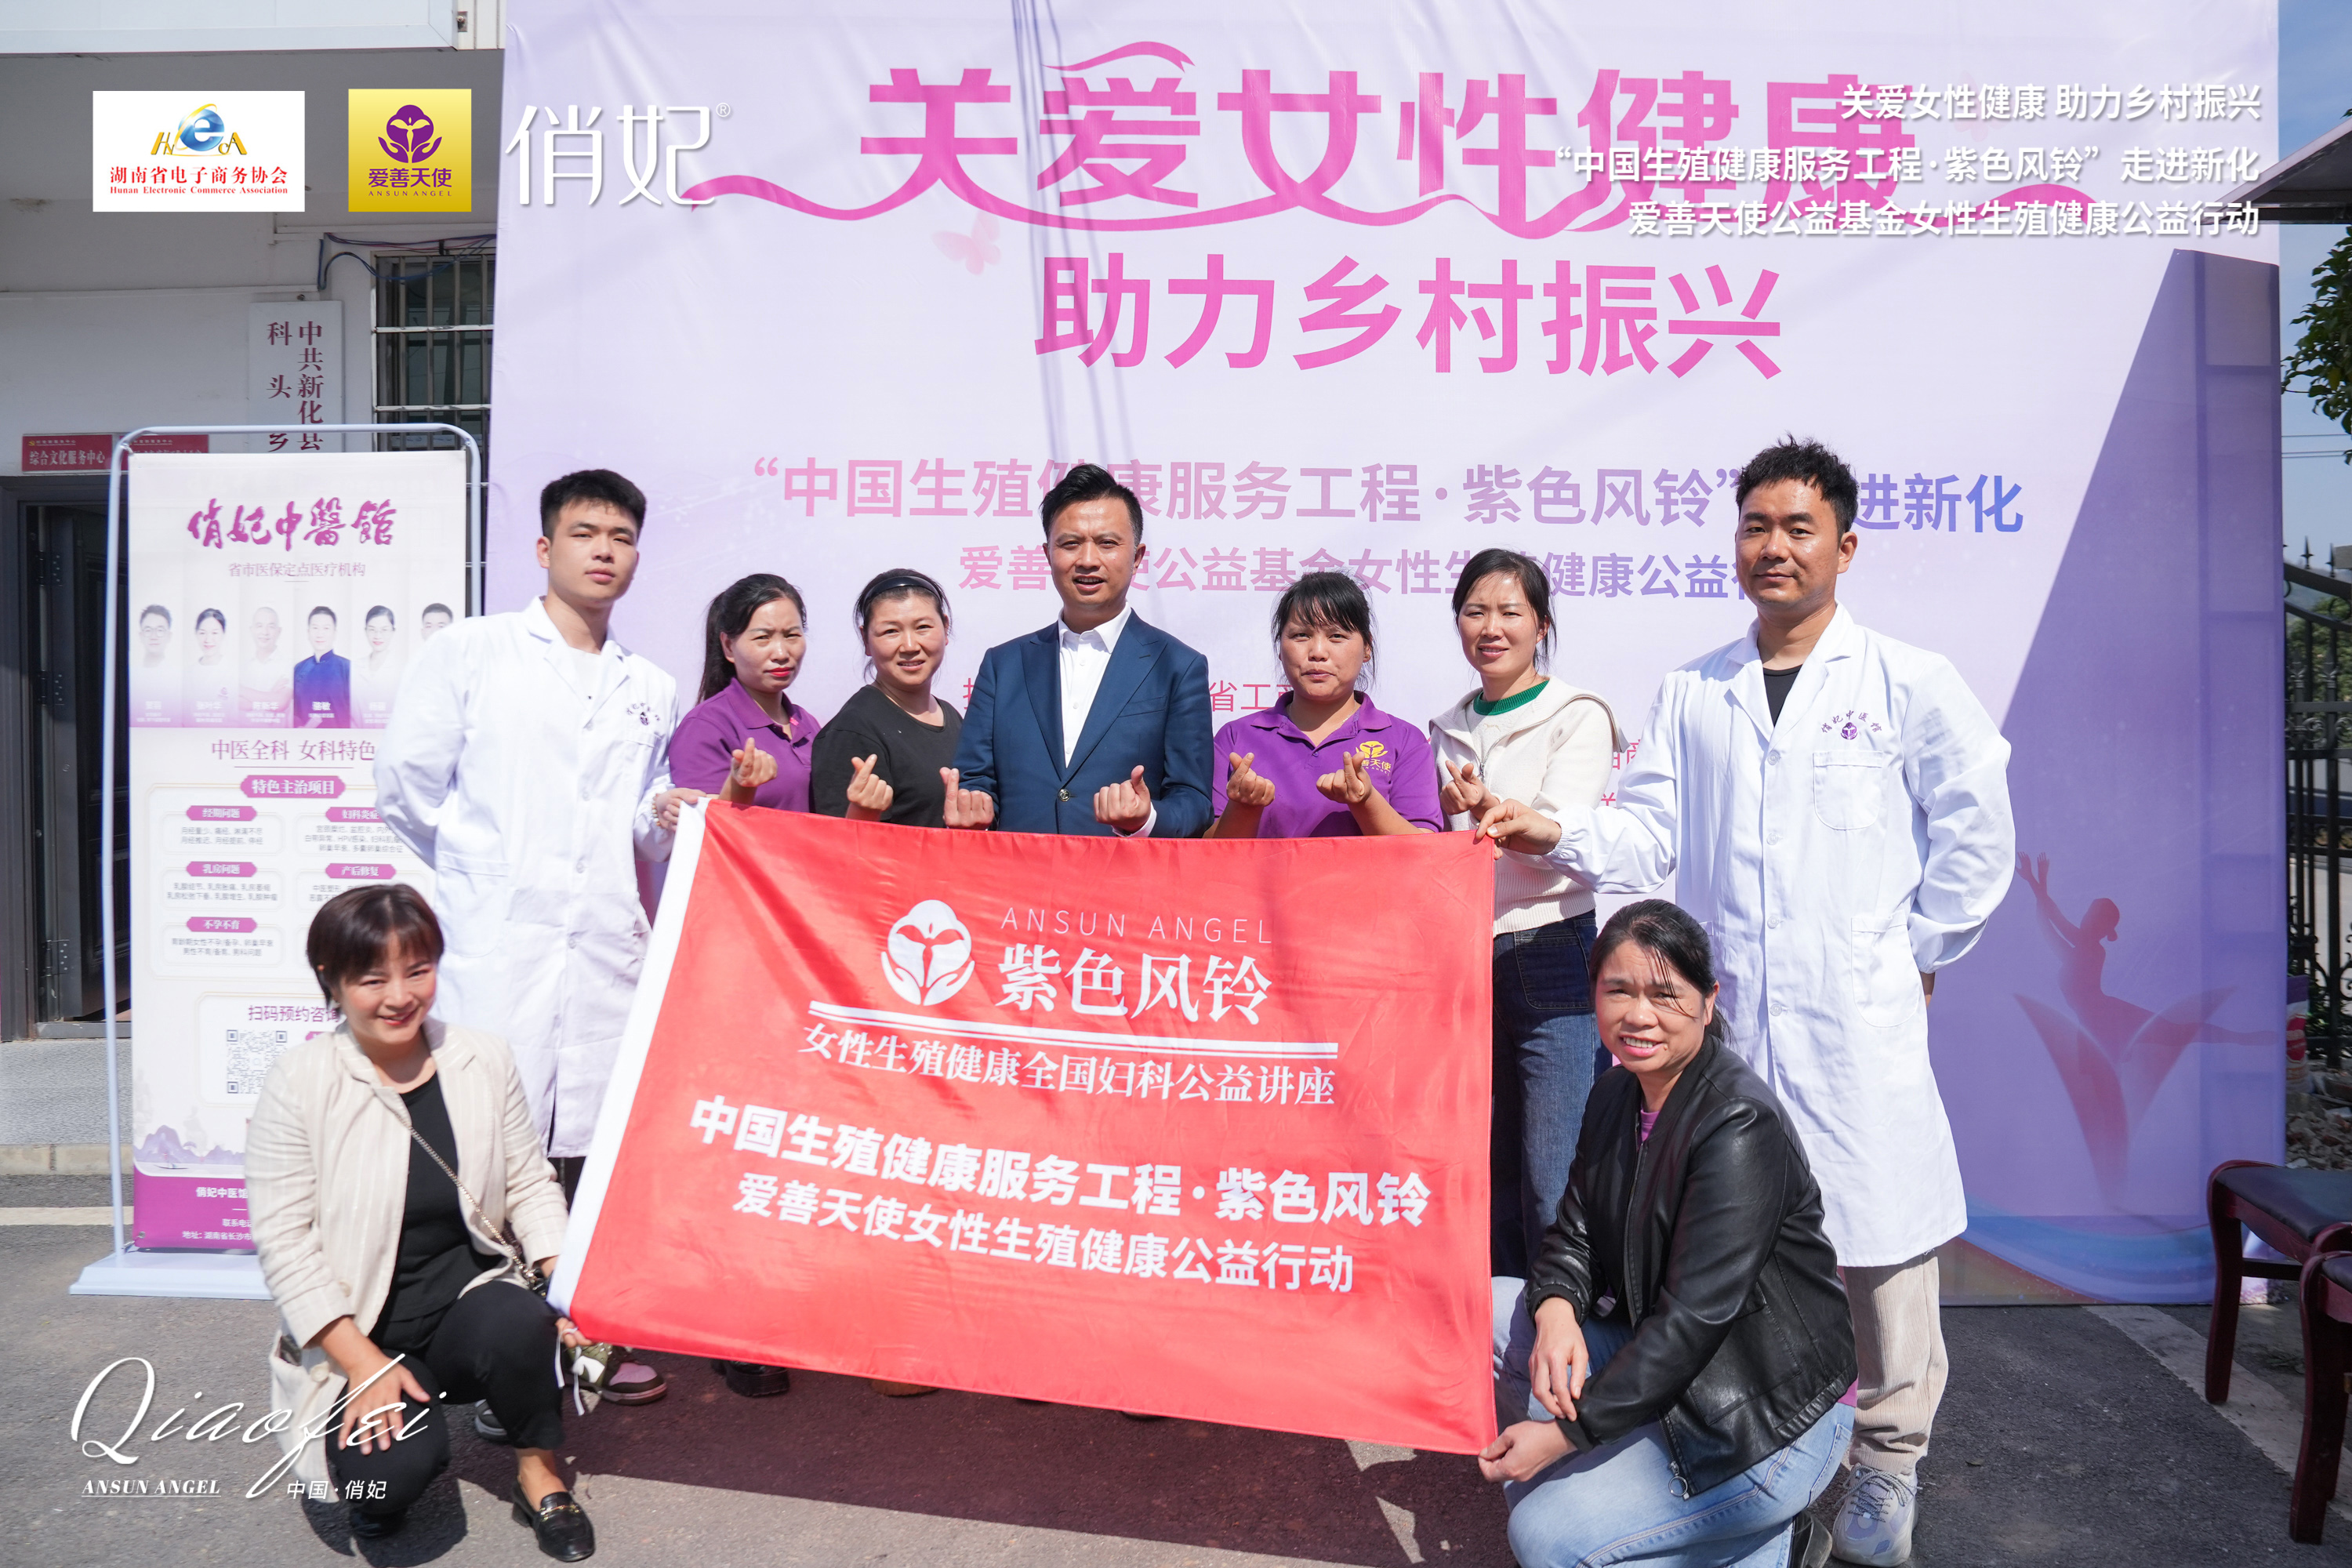 拉斯维加斯lswjs0567“中国生殖健康服务工程·紫色风铃”女性生殖健康公益行动走进新化